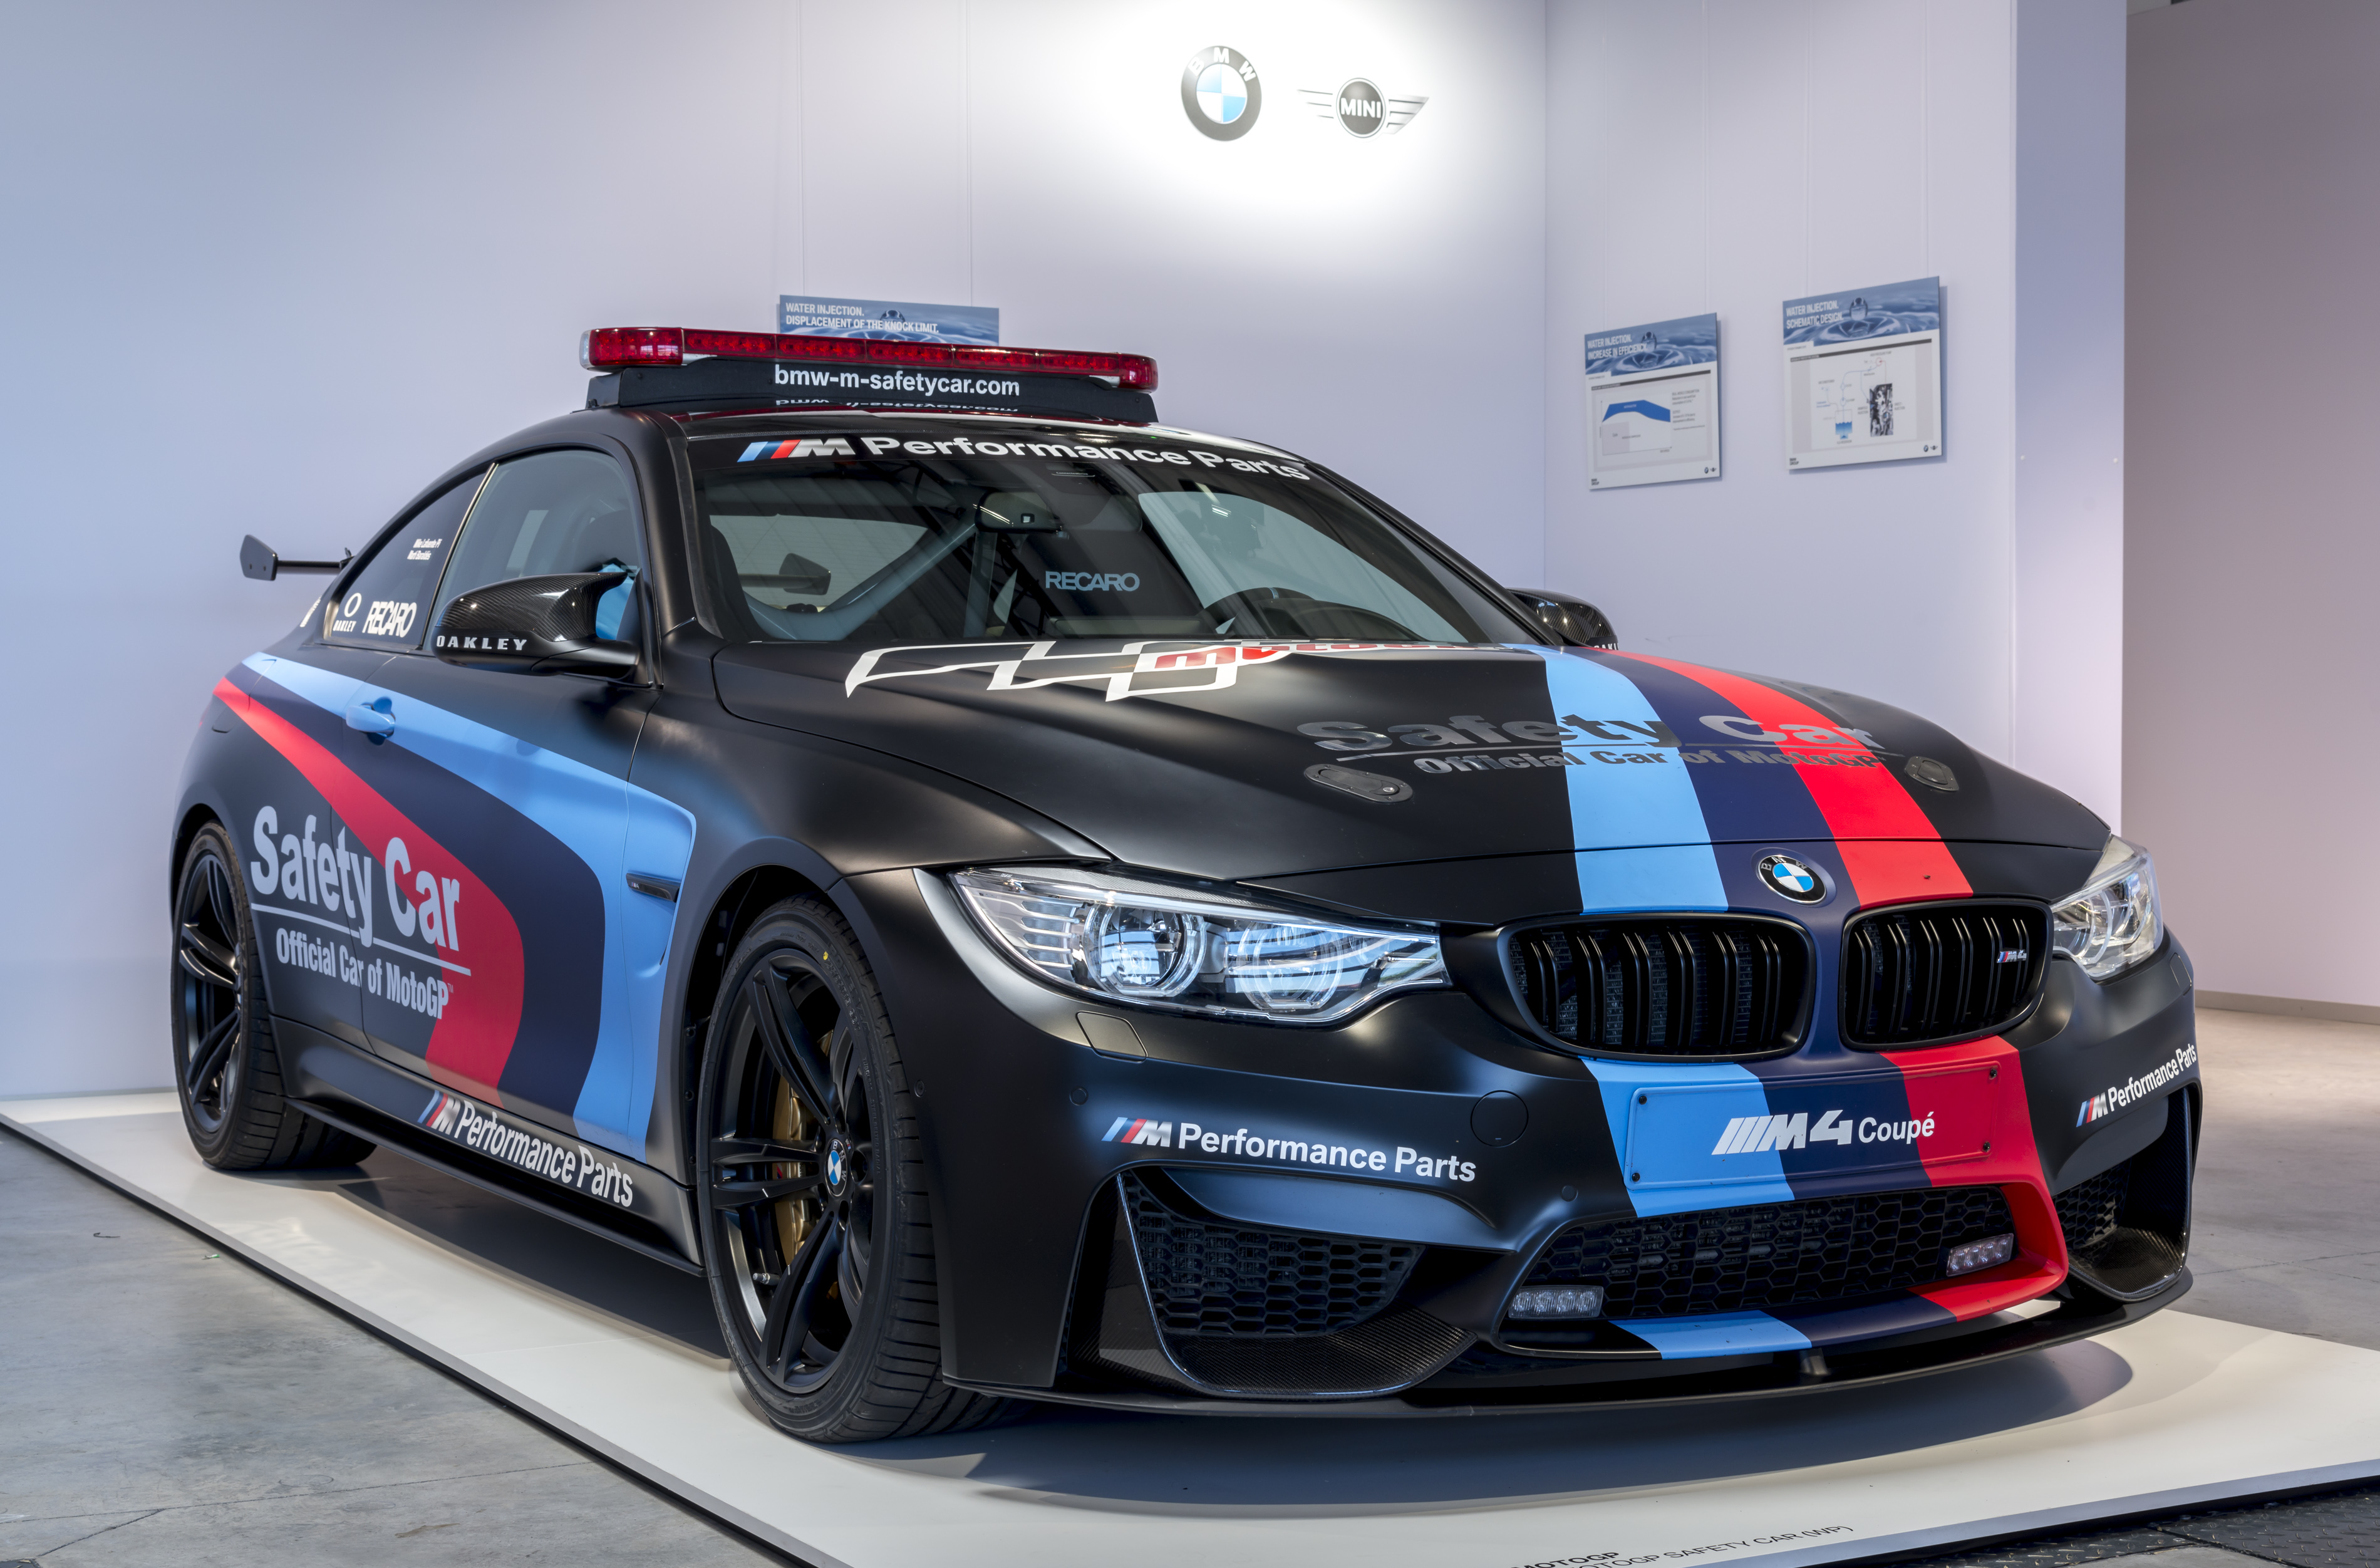 Купить bmw в германии. BMW m4 Safety car. BMW m4 Coupe DTM Safety car. BMW f60 Safety car. BMW Group.